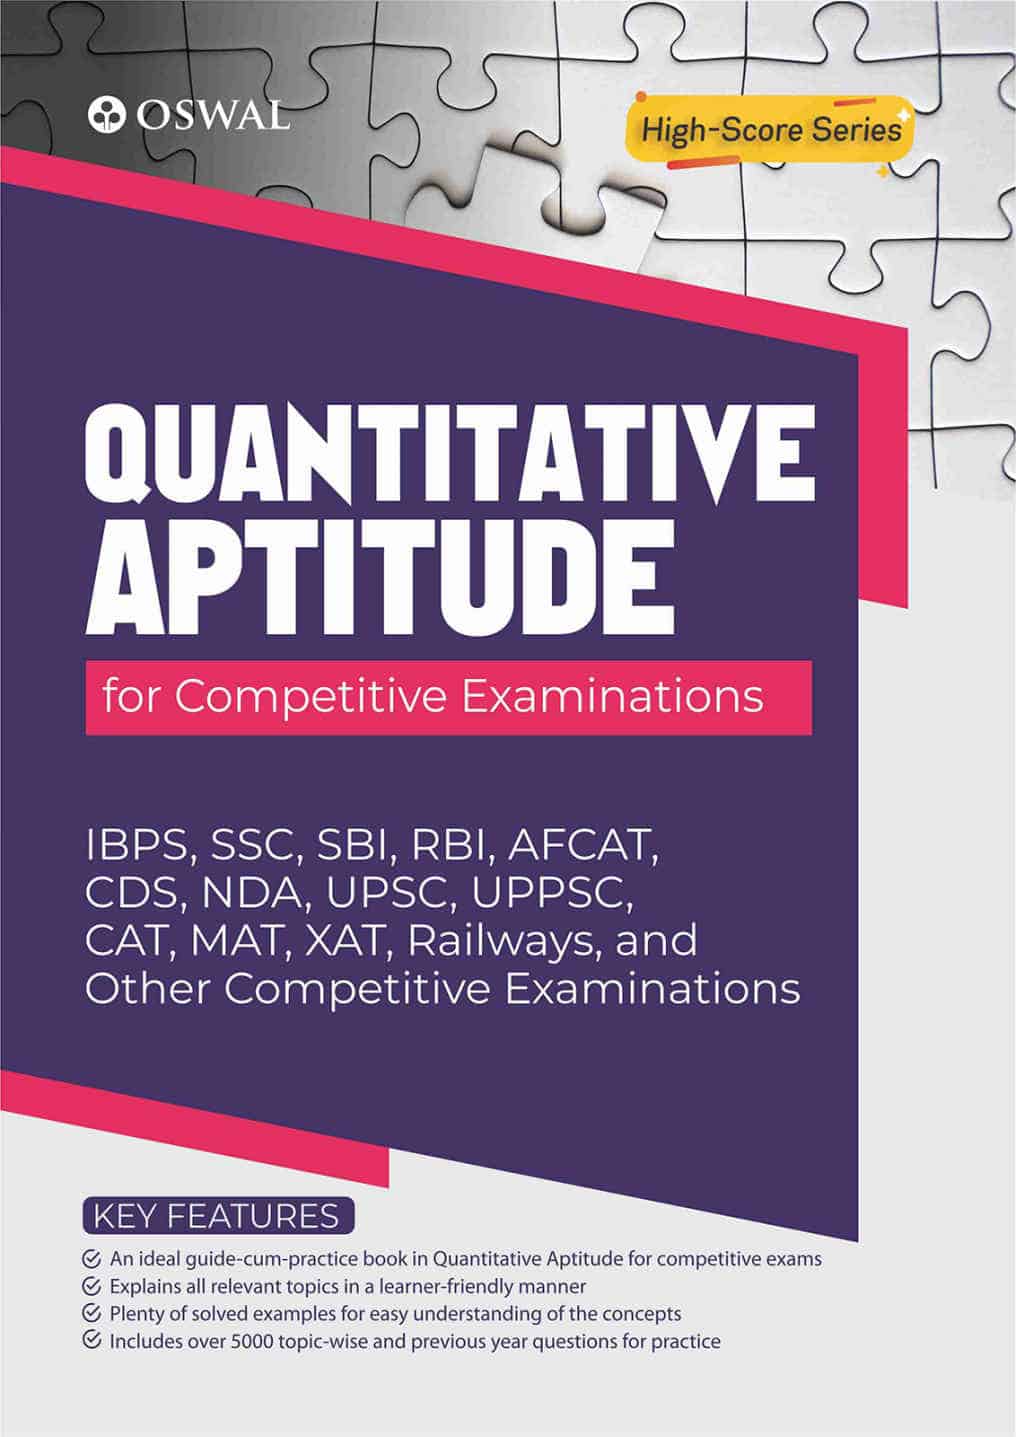 Oswal Quantitative Aptitude for Competitive Exams PDF